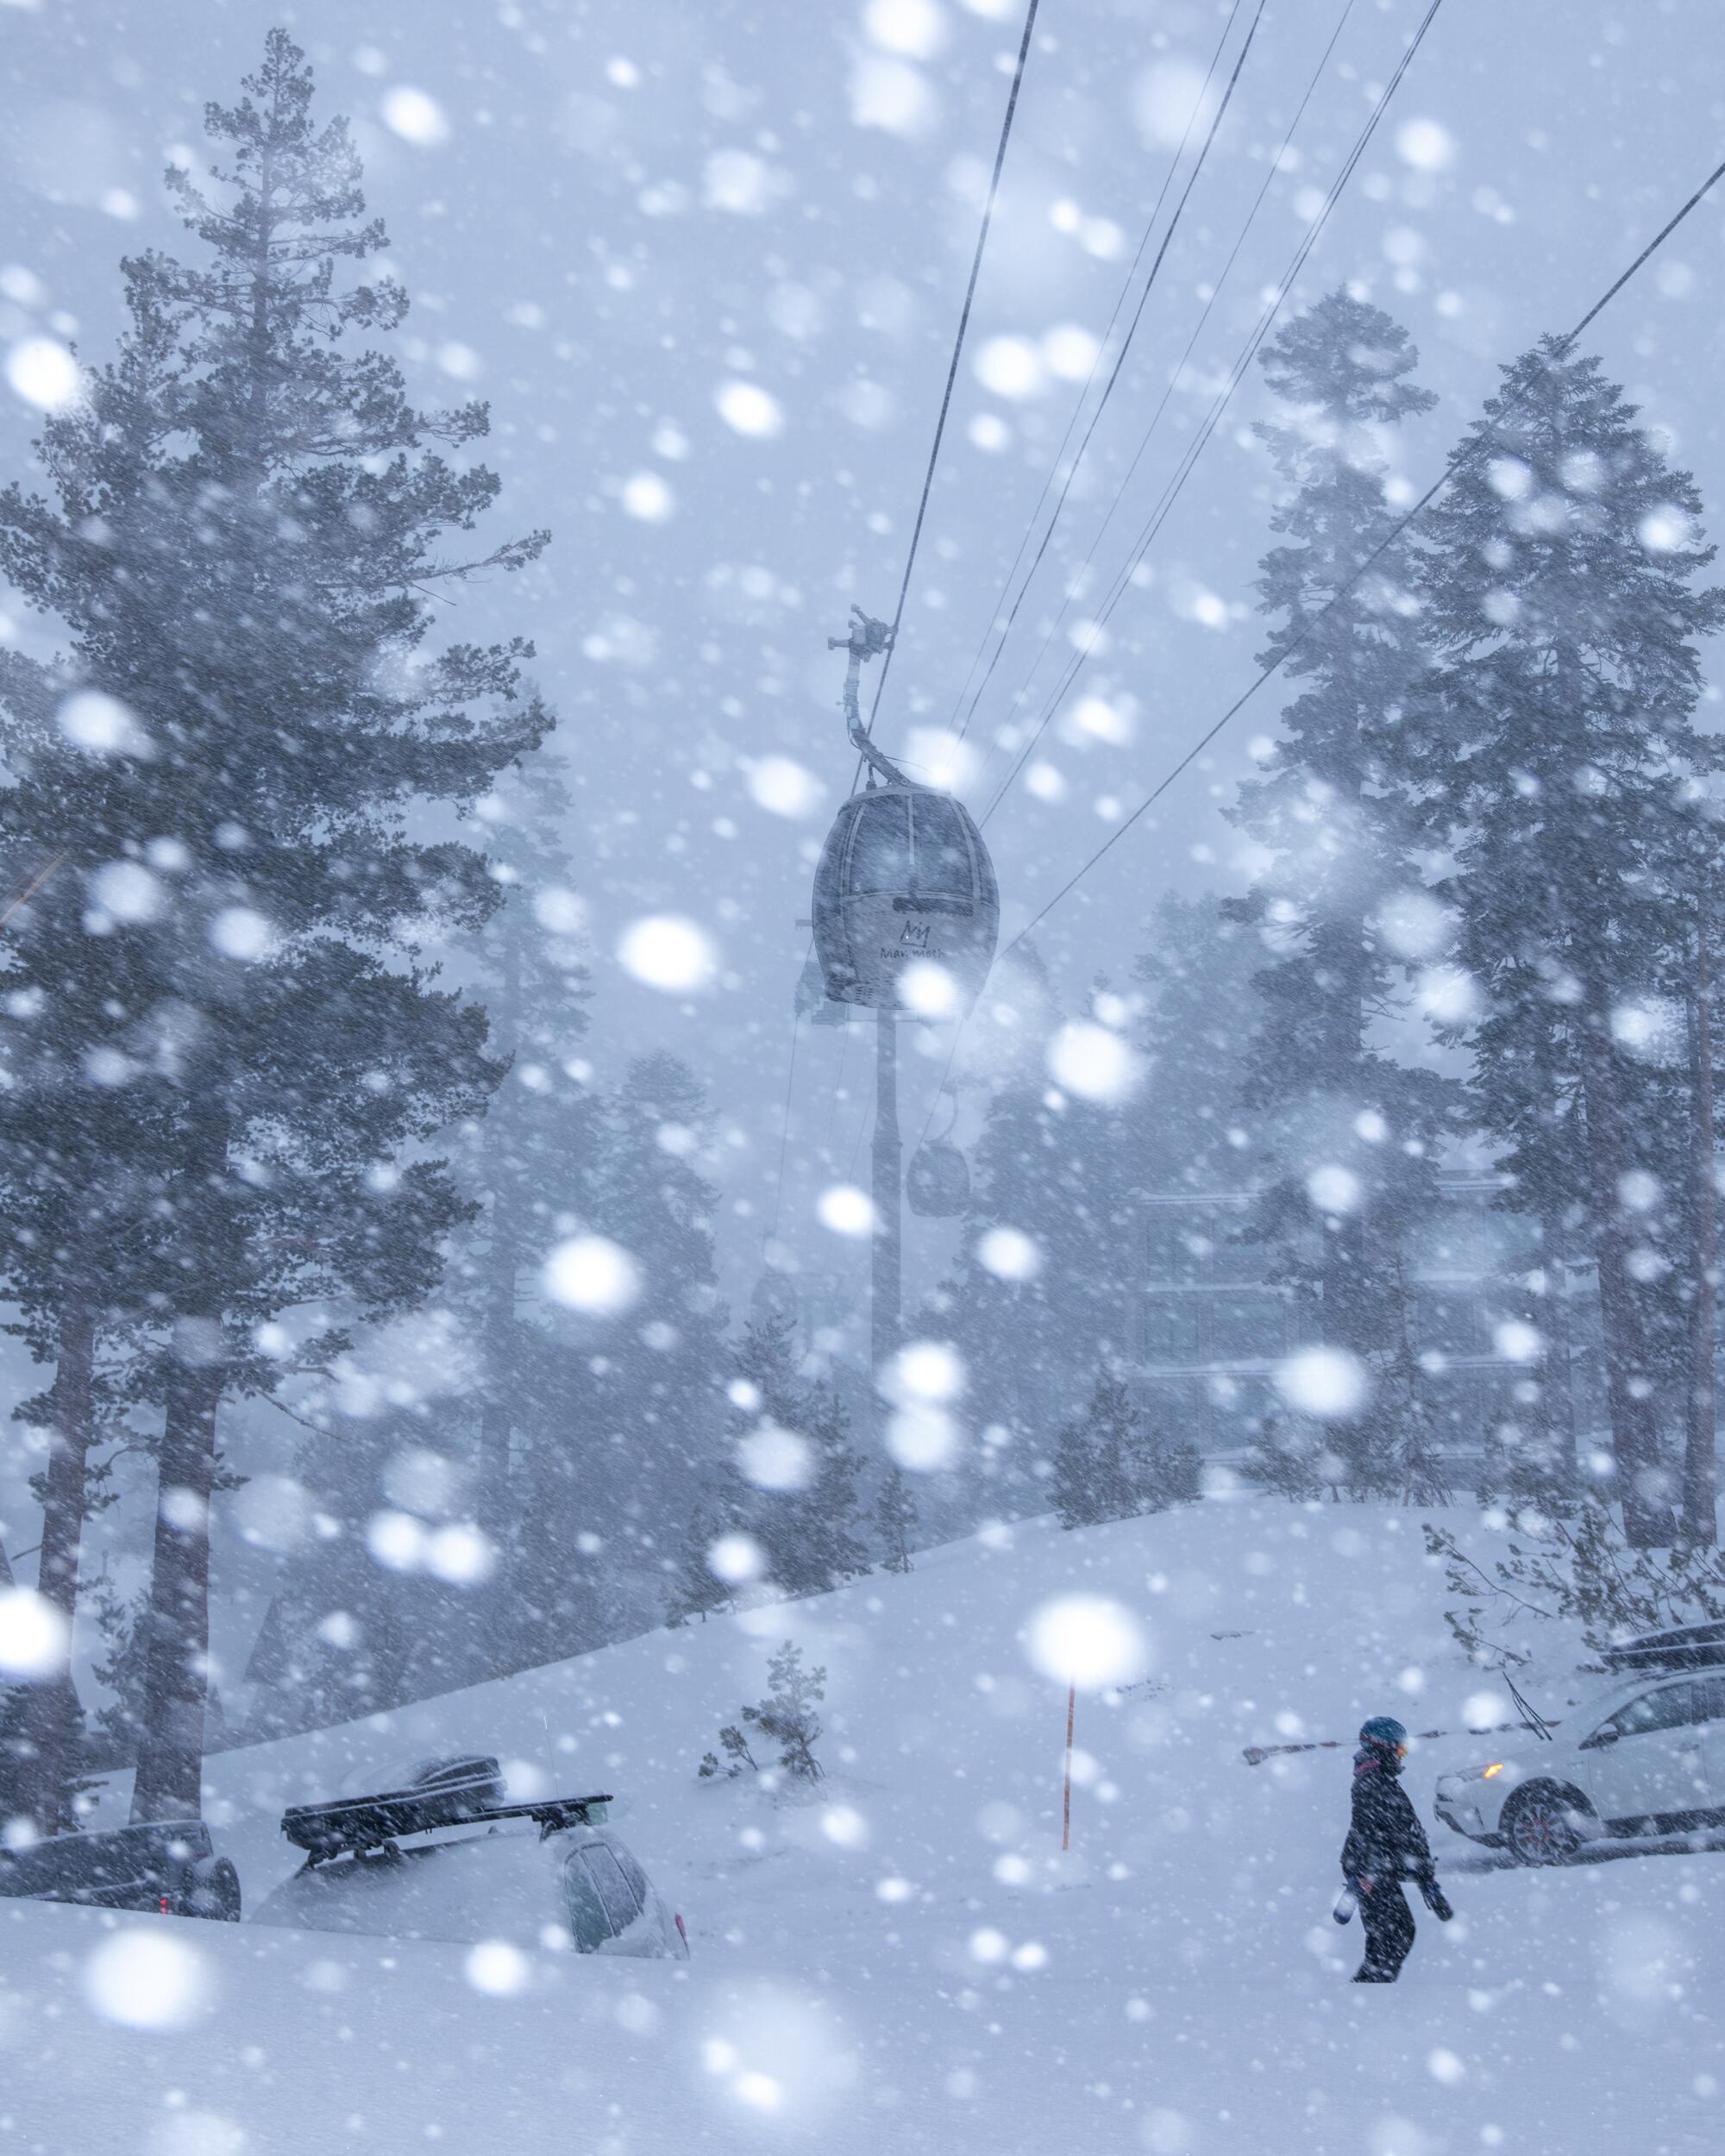 La neige tombe sur une scène représentant une personne, des pins, un sol enneigé et un élévateur aérien.